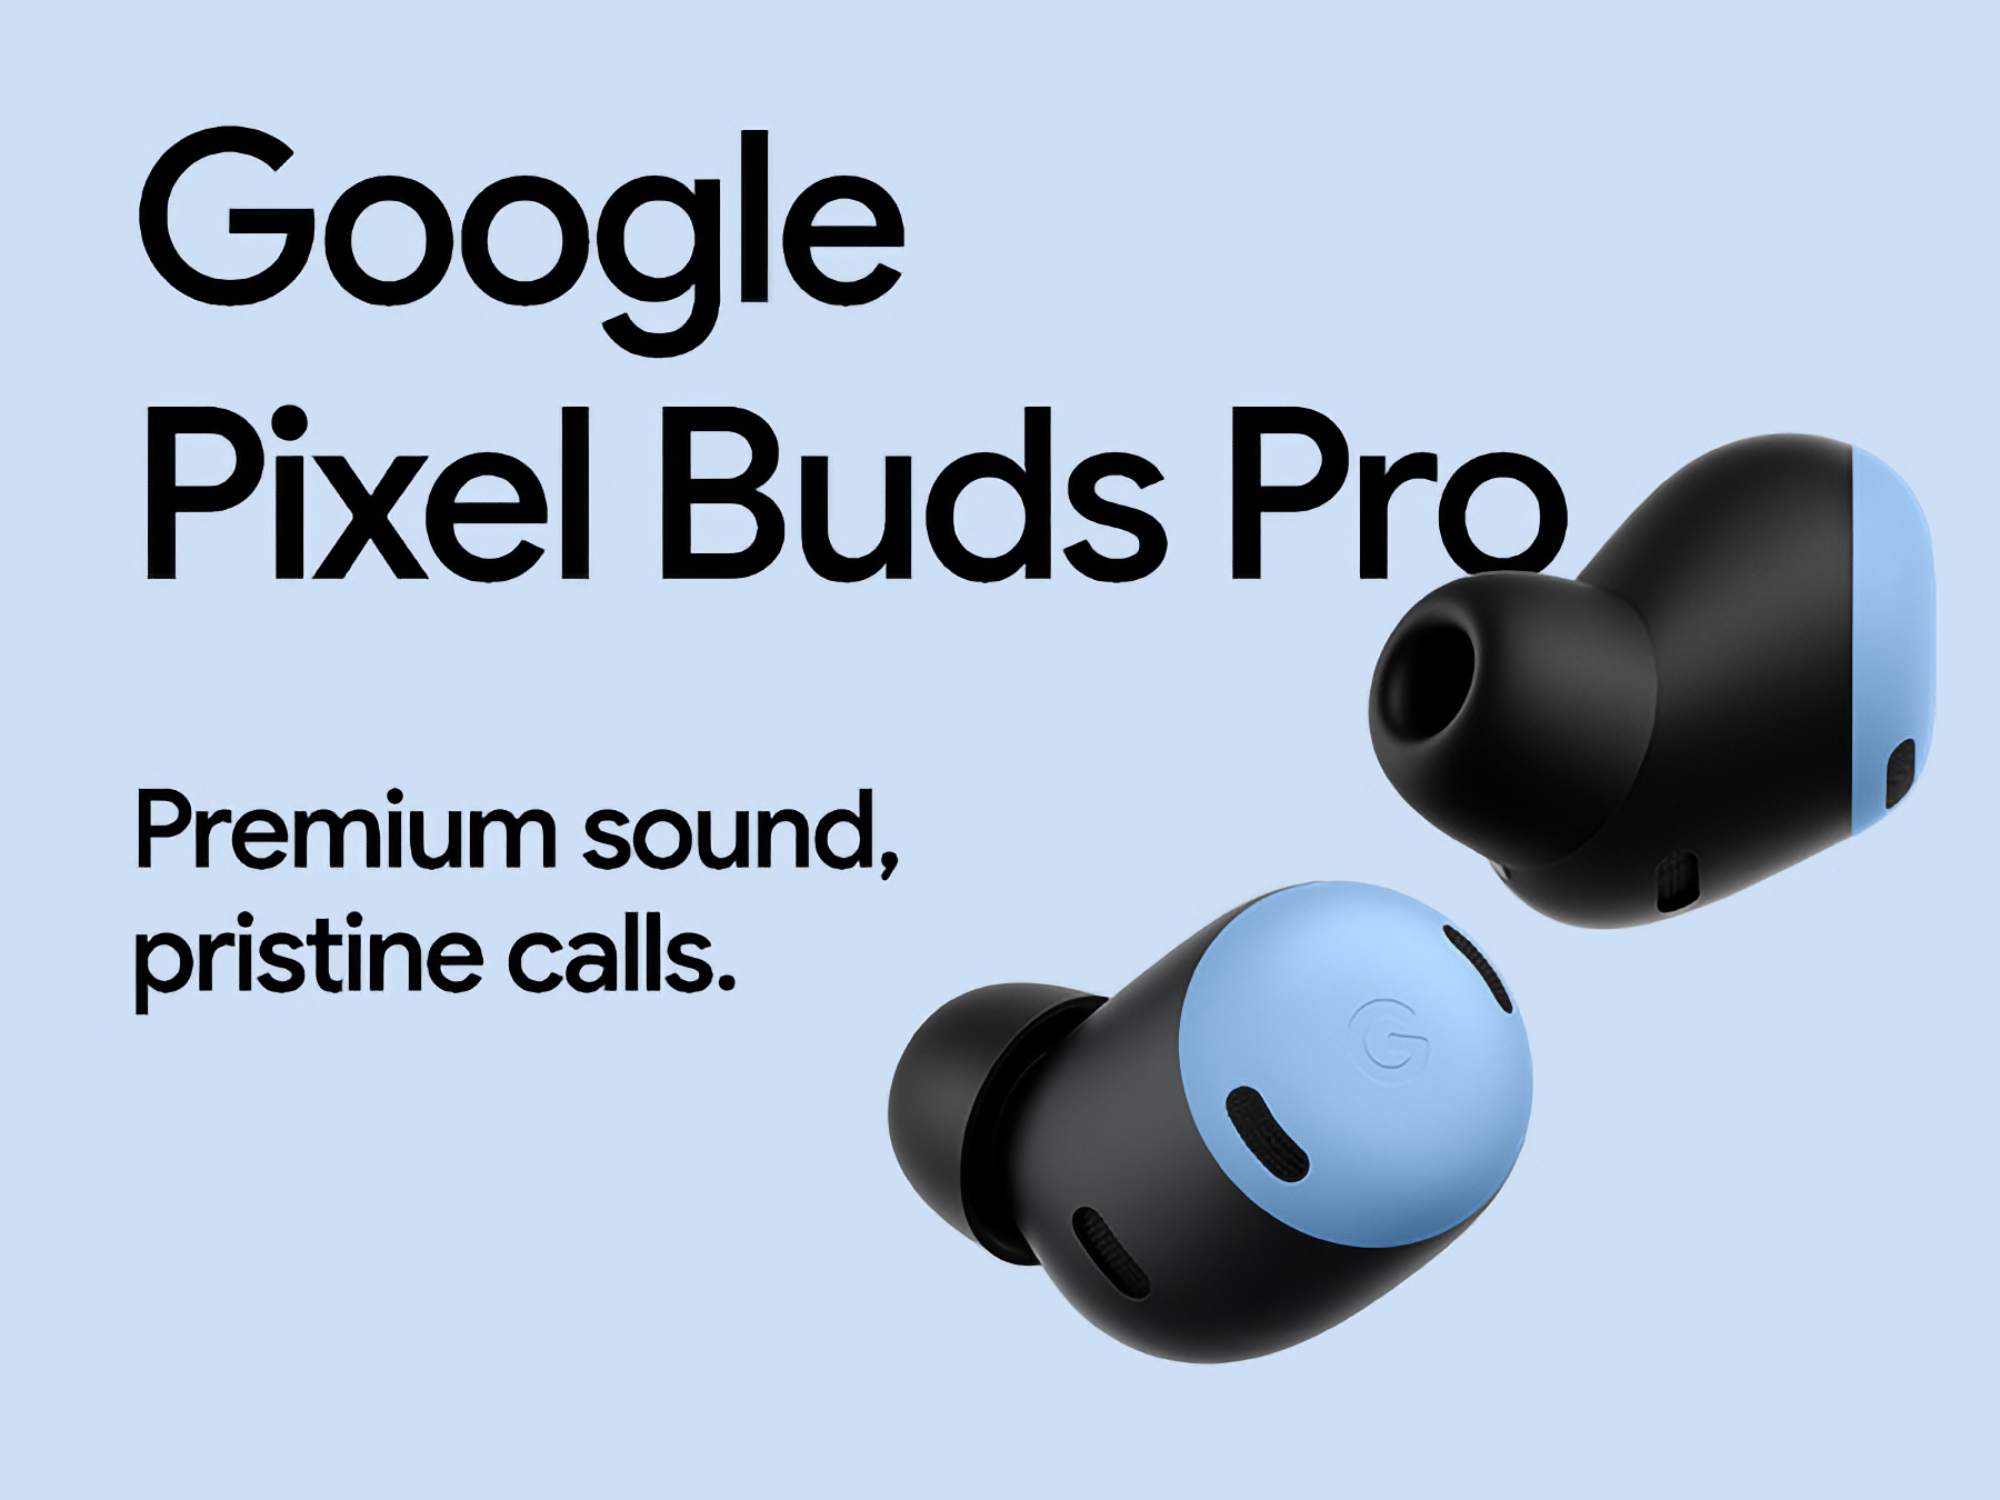 Ein tolles Angebot: Google Pixel Buds Pro bei Amazon mit $50 Rabatt